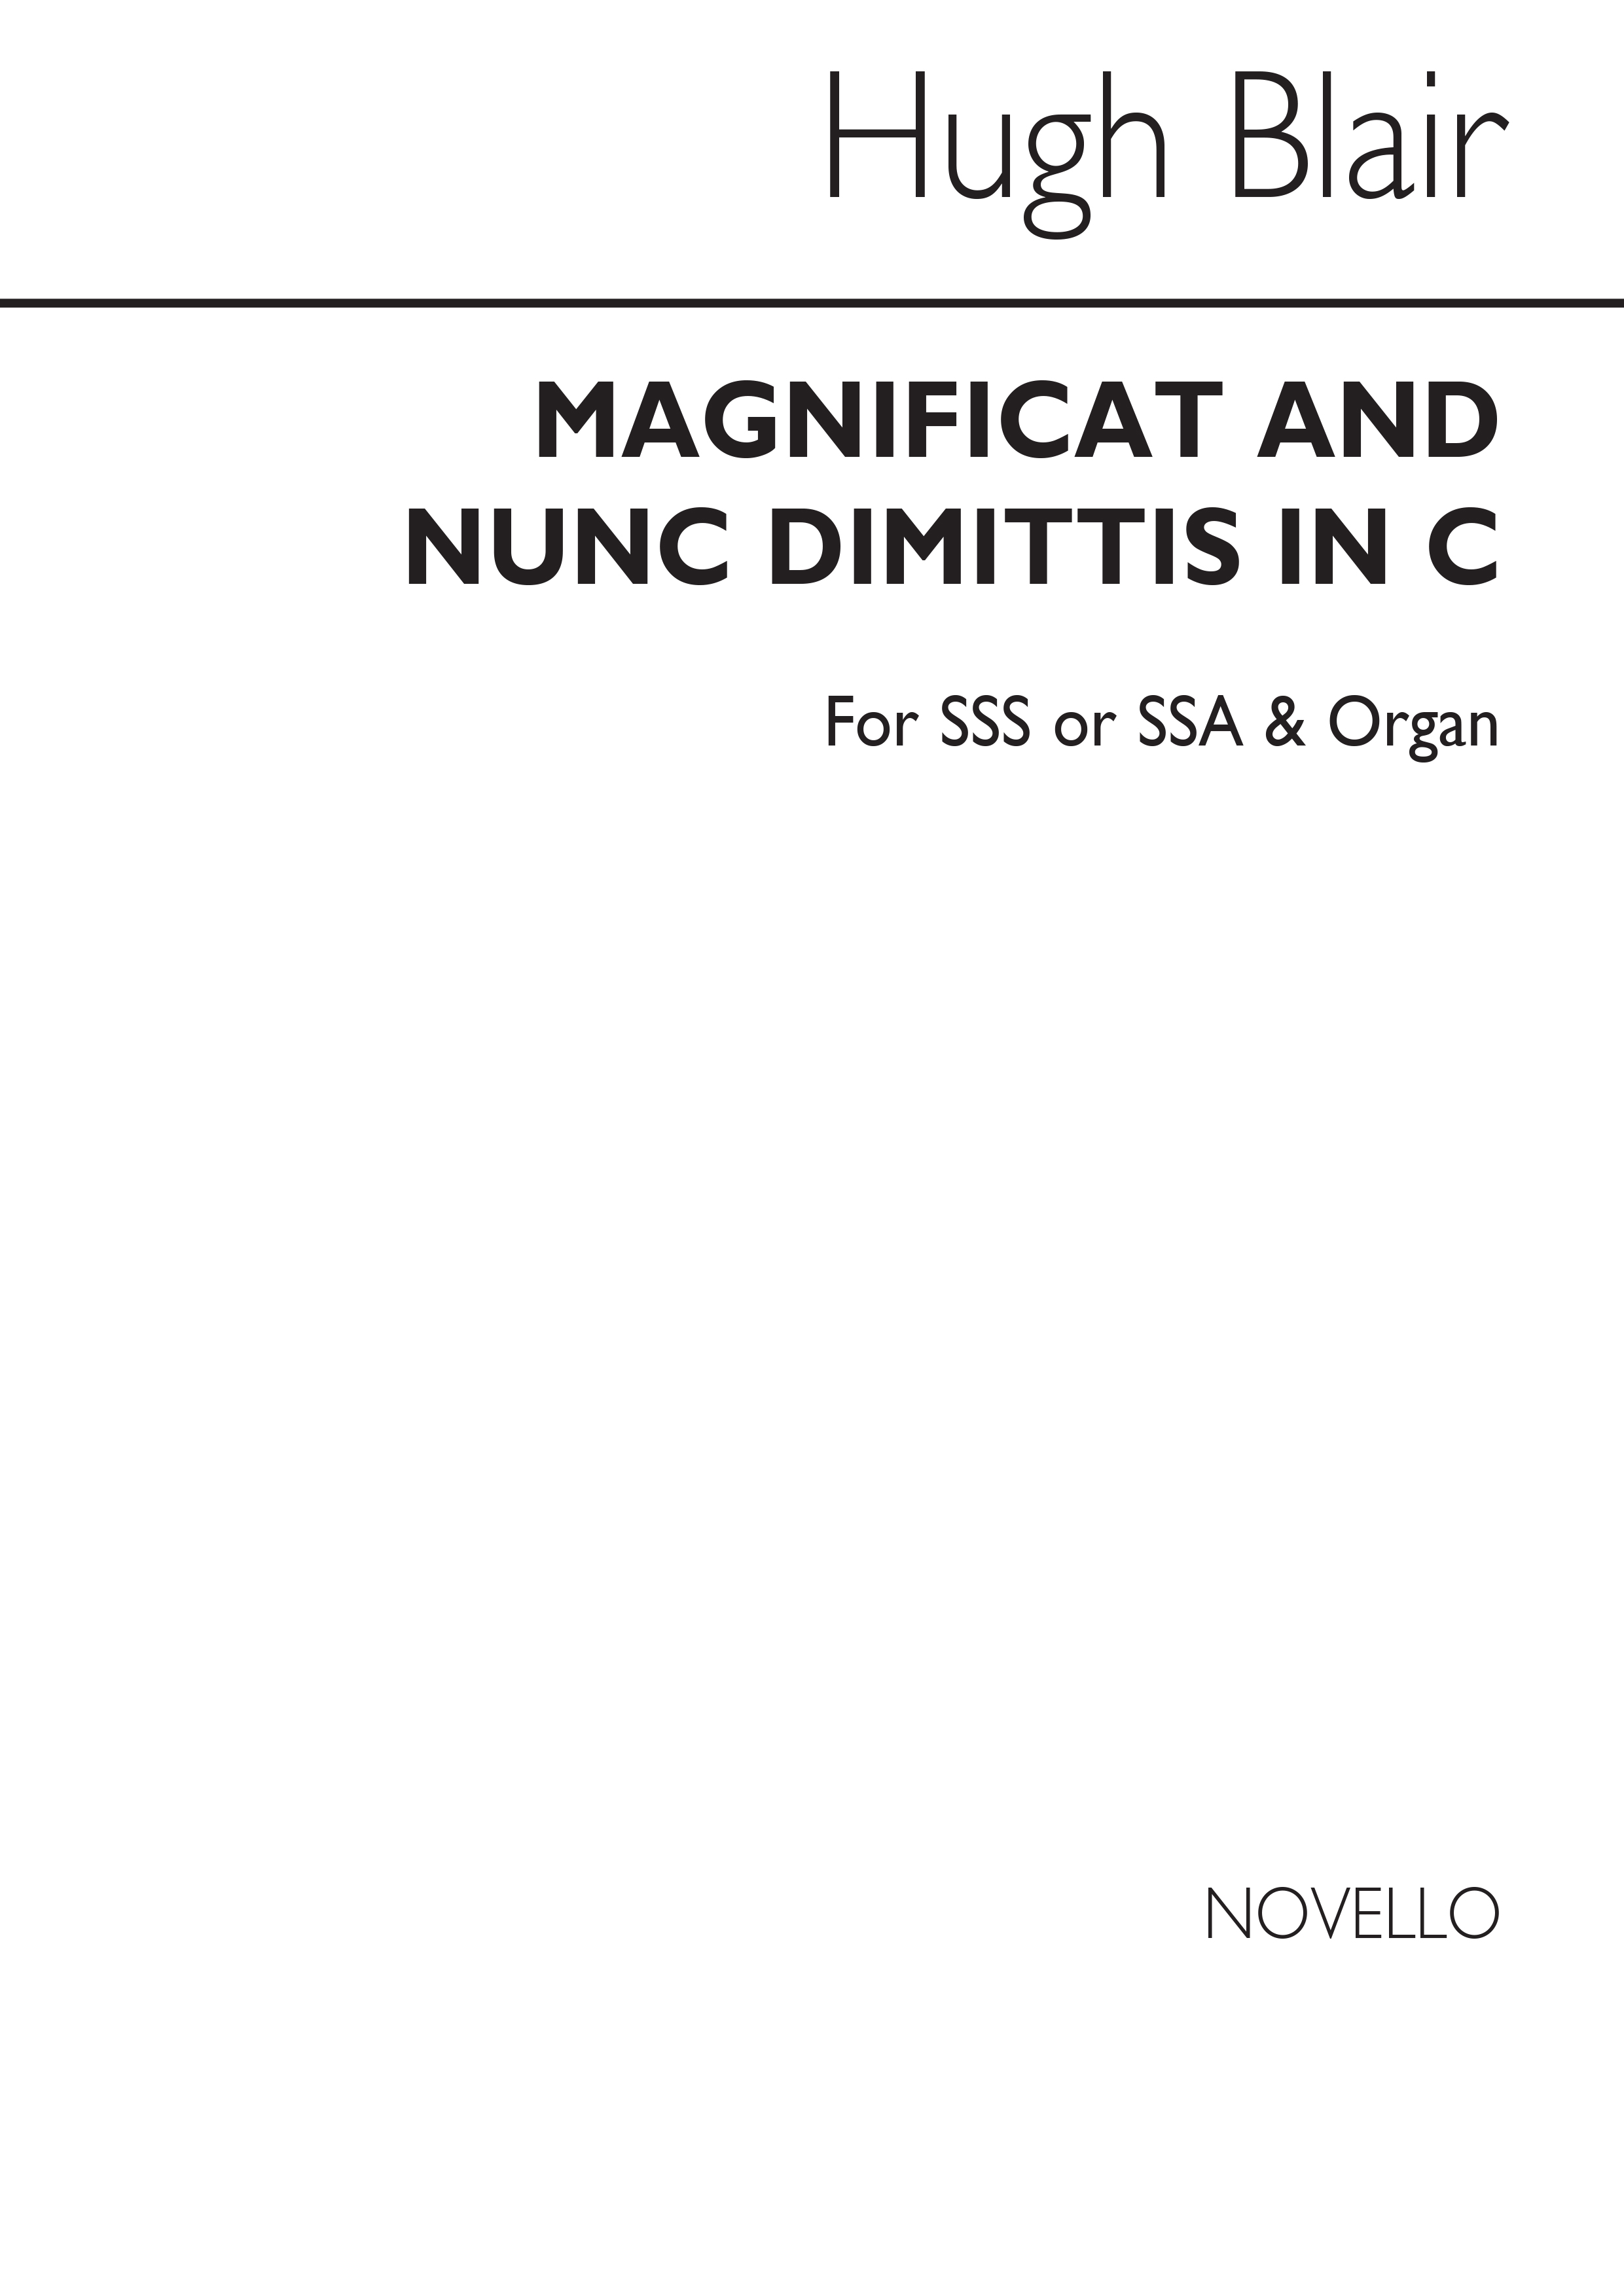 Hugh Blair: Magnificat And Nunc Dimittis In C